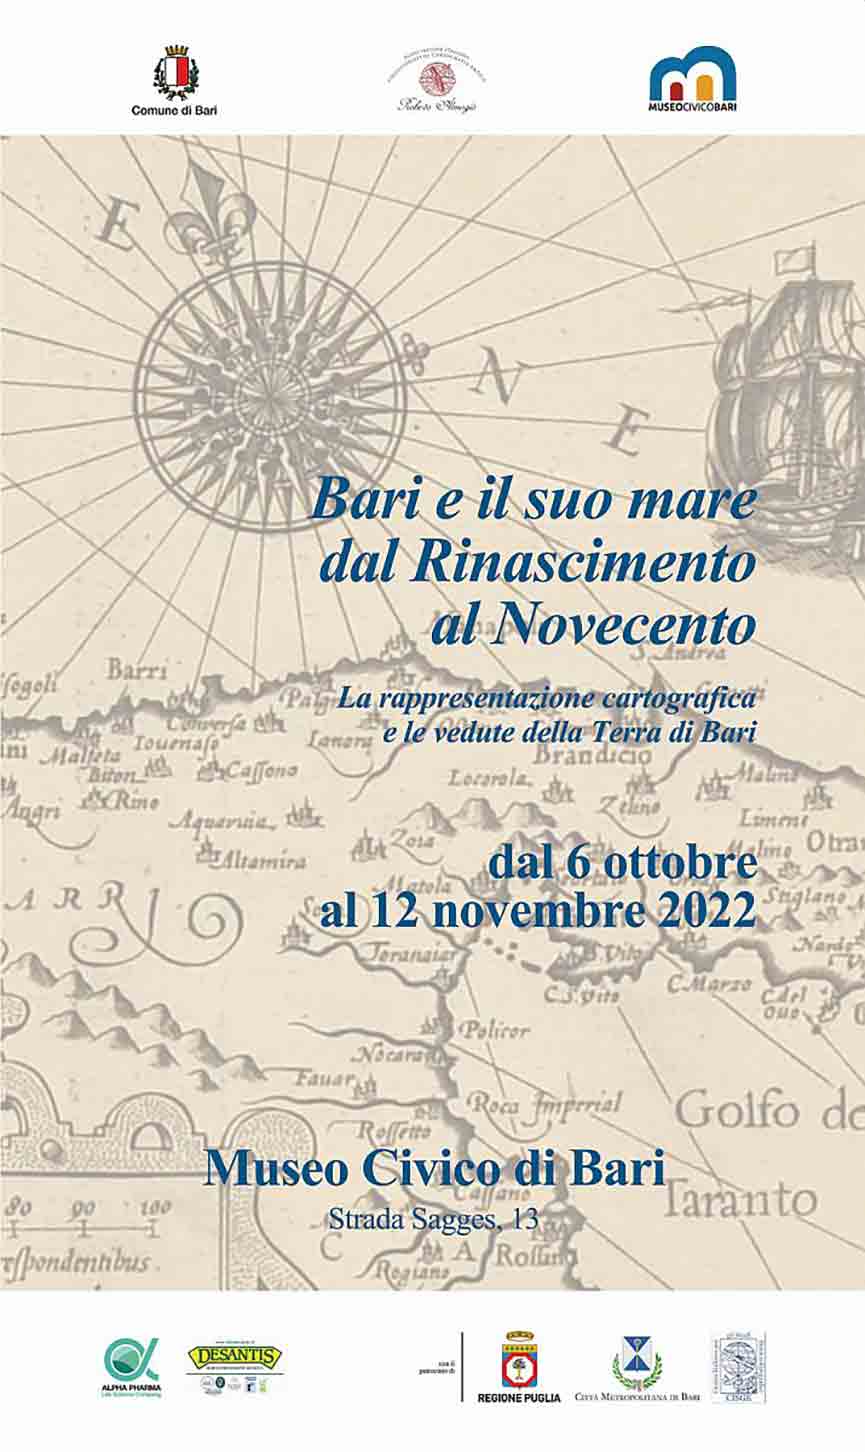 Mostra Bari e il suo mare: dal Rinascimento al Novecento Bari